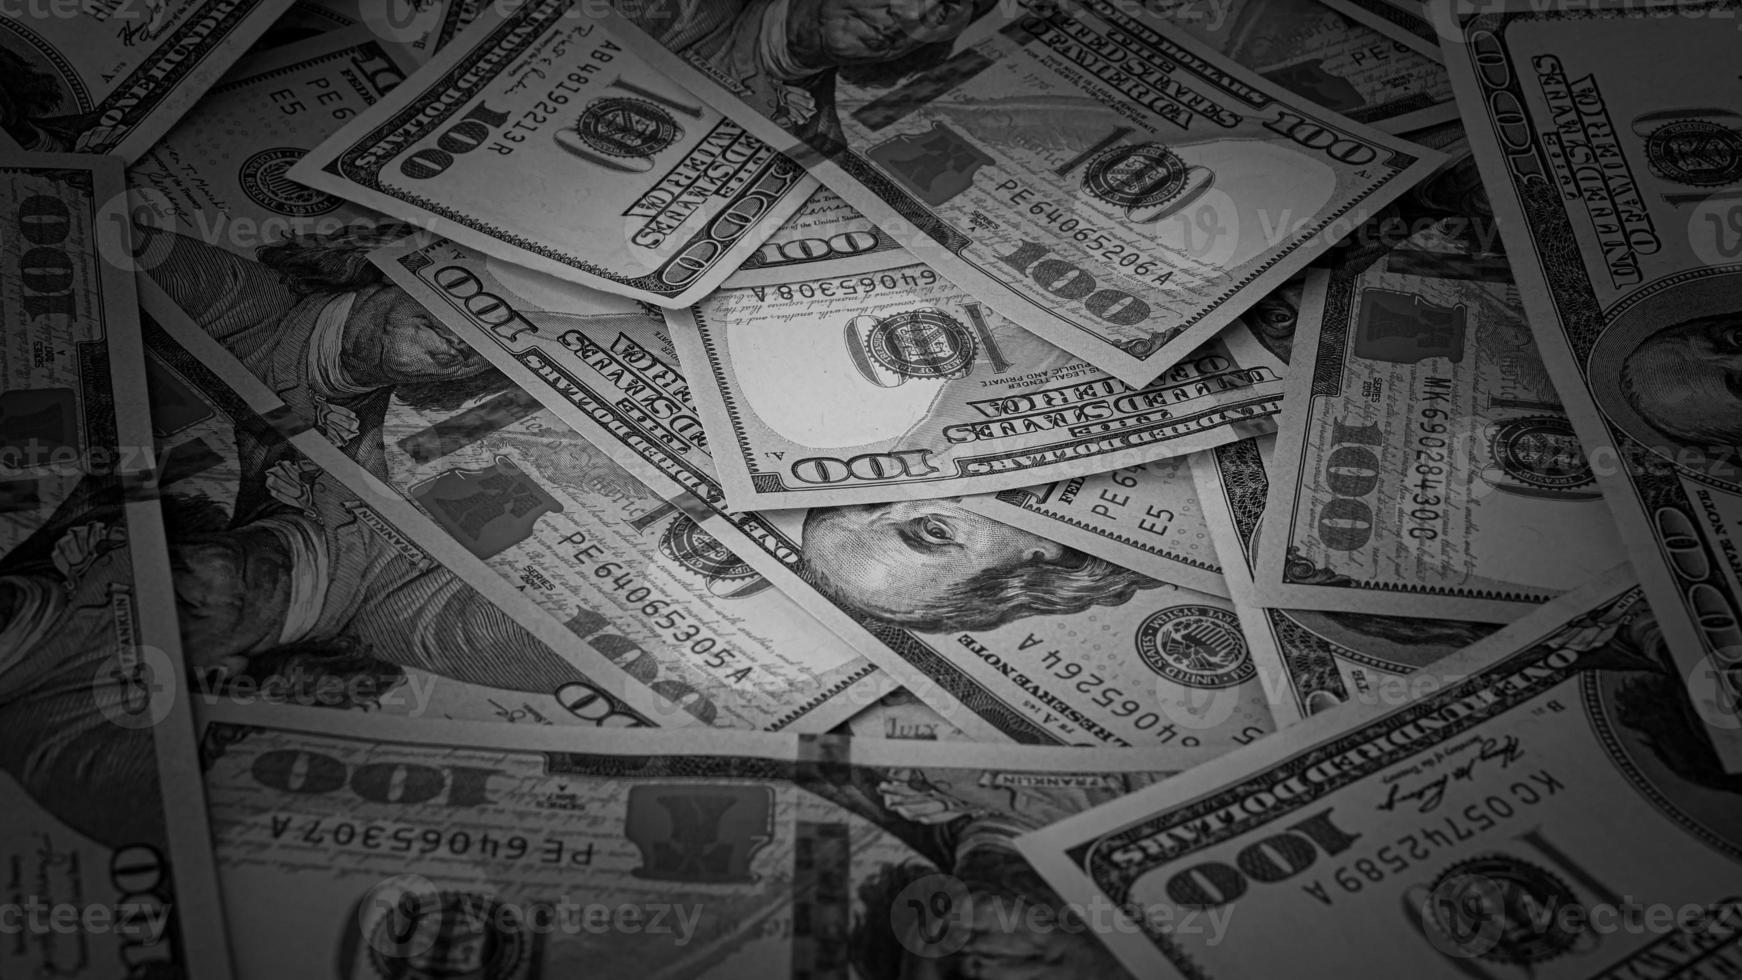 negro y blanco antecedentes de nosotros moneda billetes financiero concepto dinero antecedentes cien dólar cuentas foto